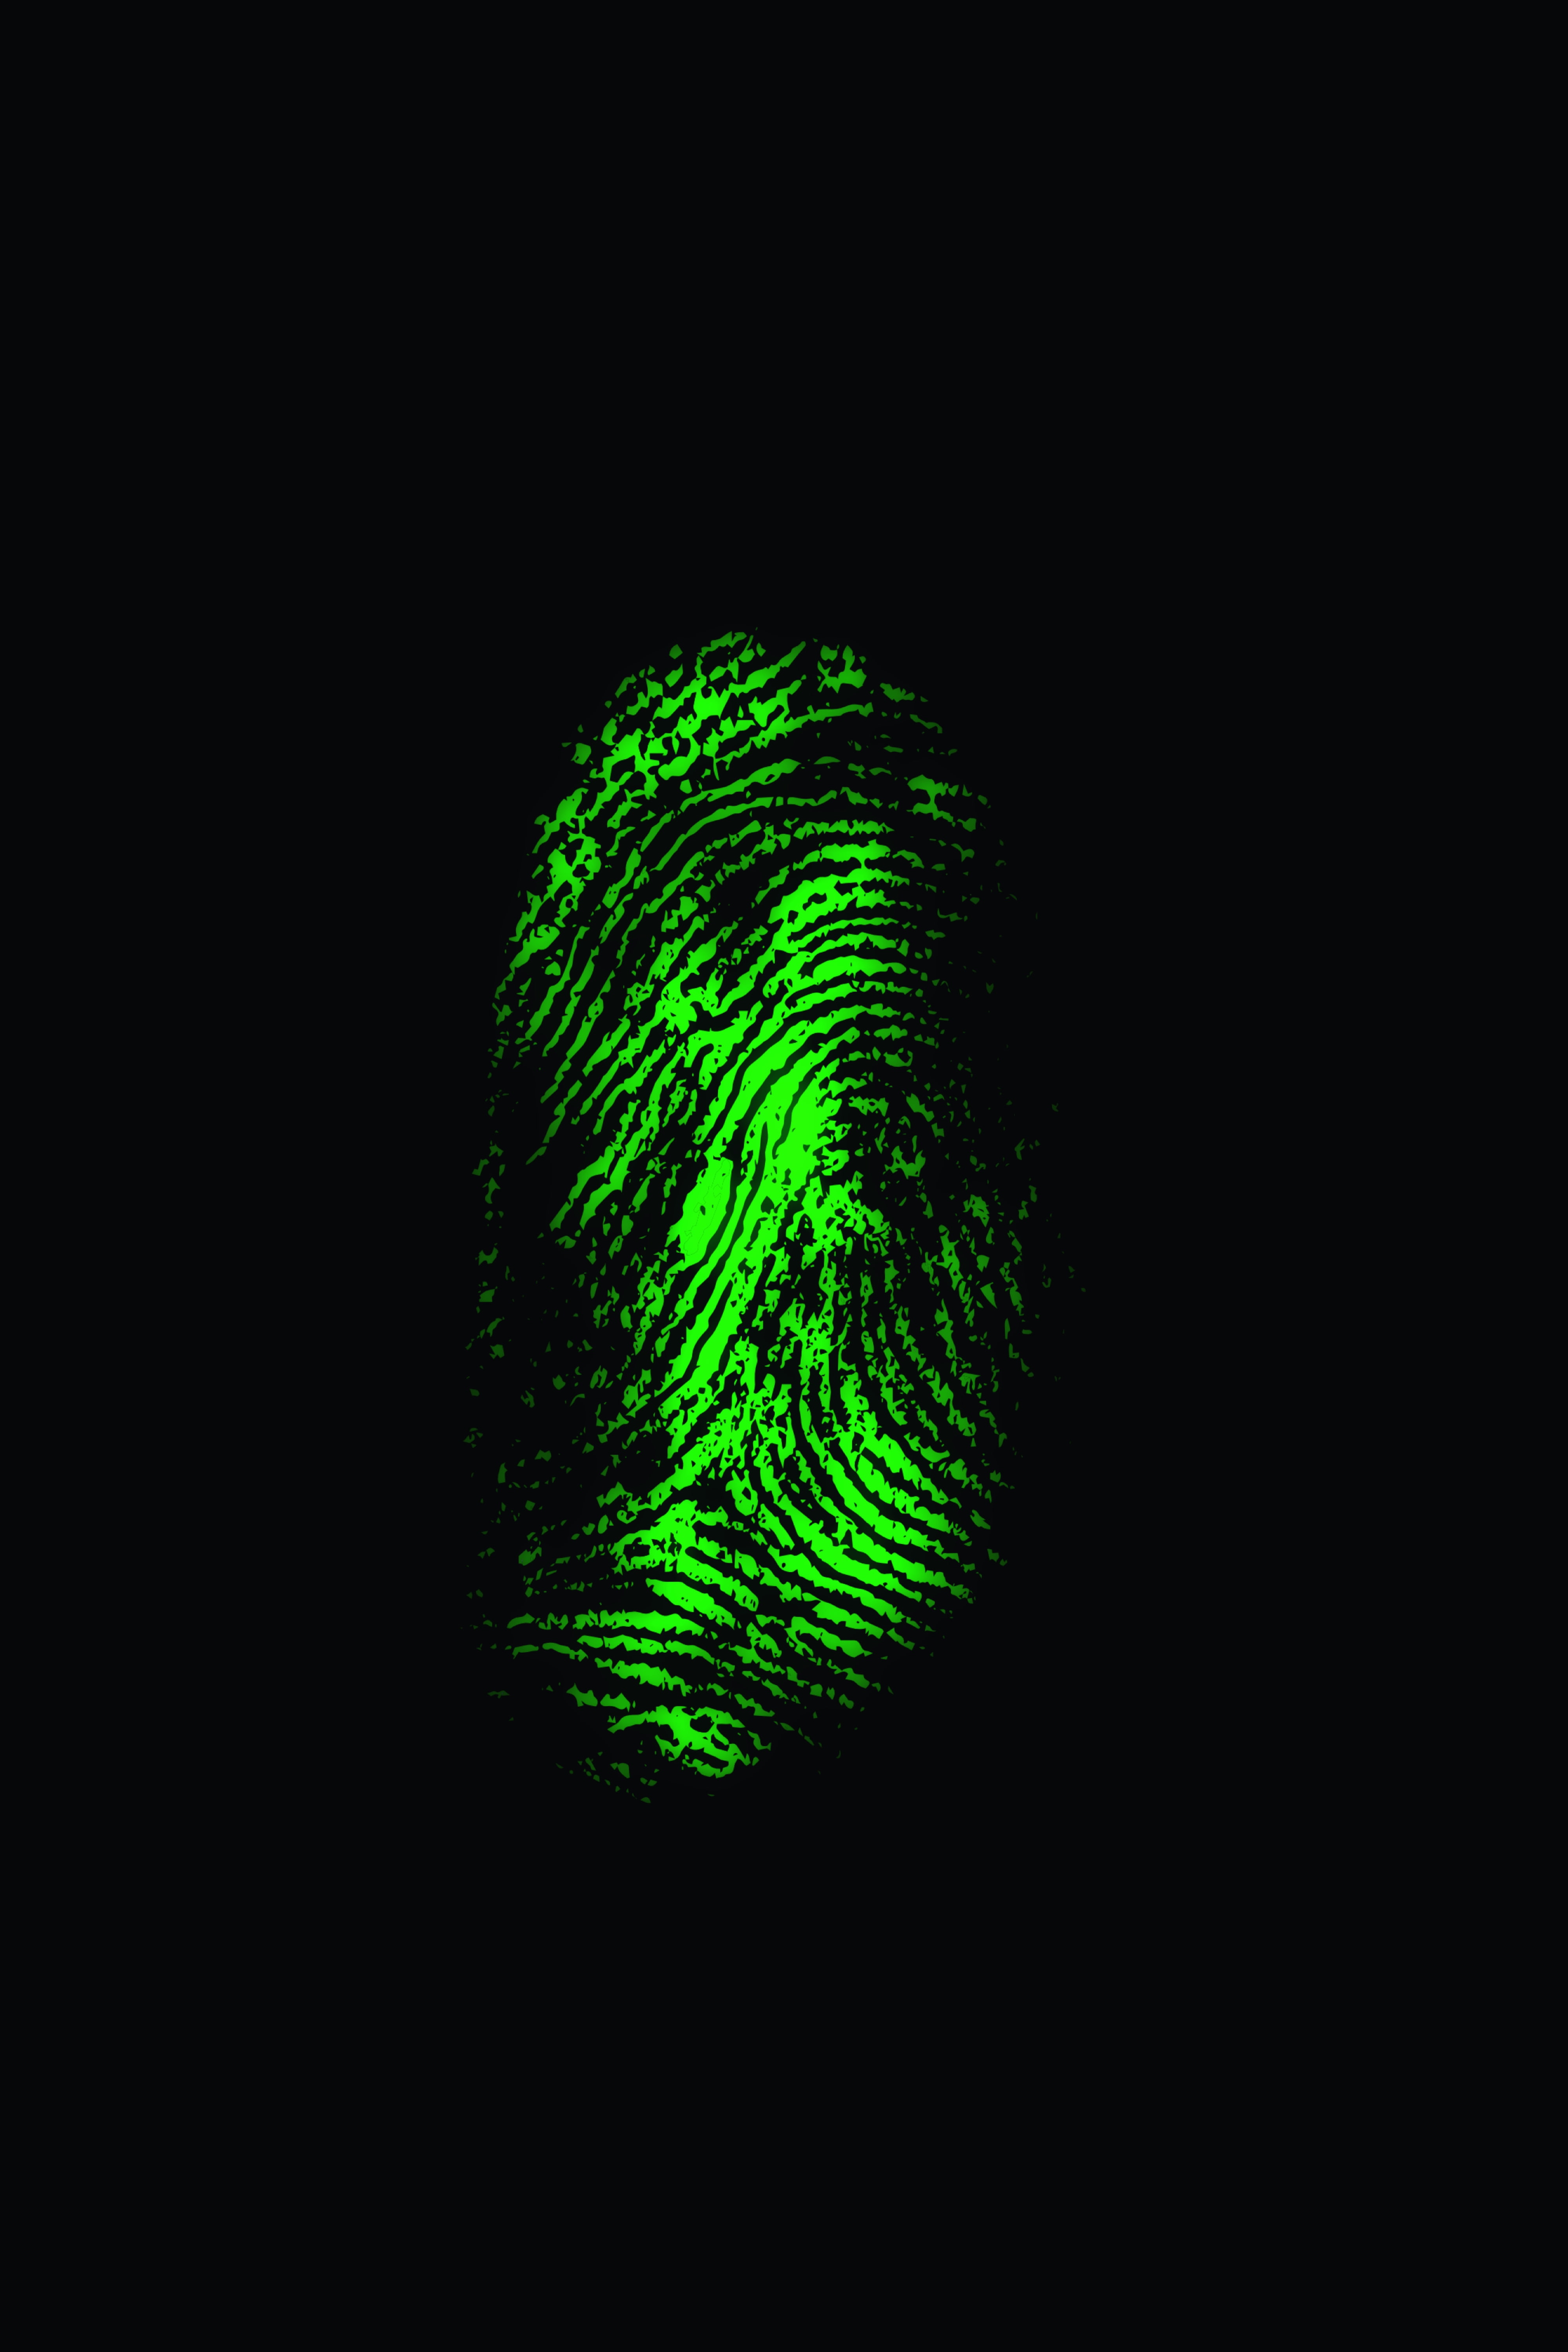 fingerprint, scanner, green, trace